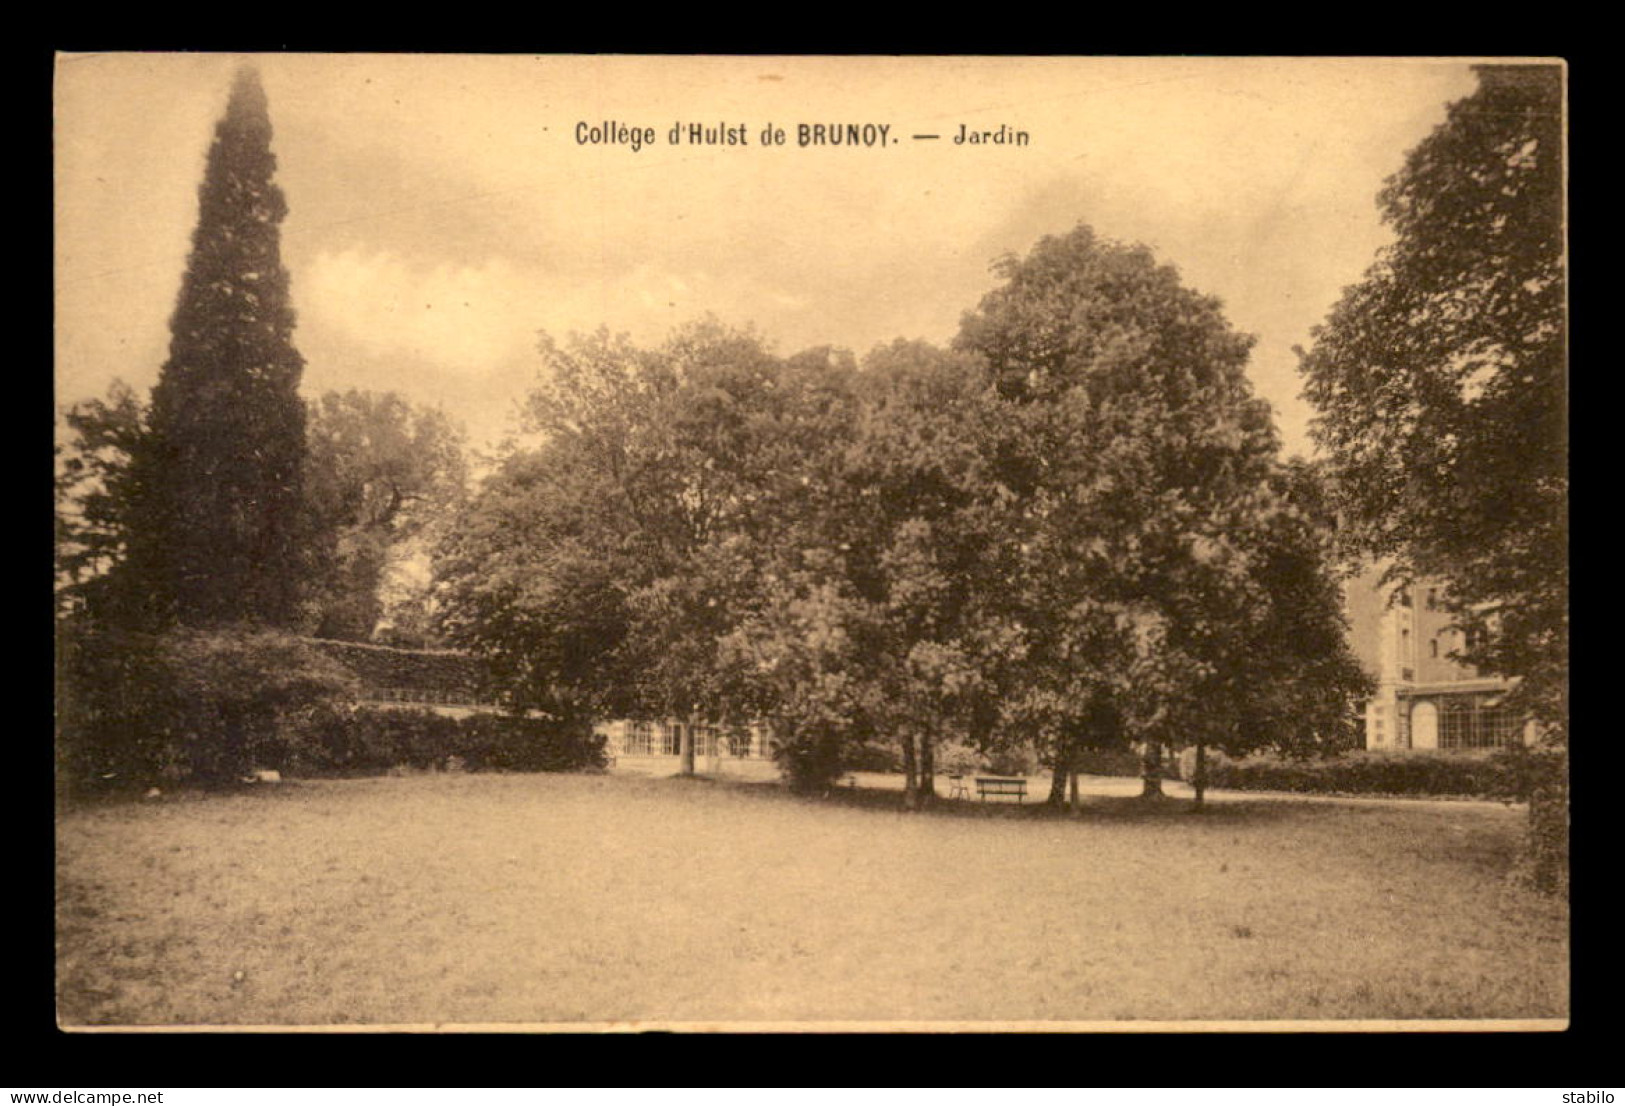 91 - BRUNOY - COLLEGE D'HULST - LE JARDIN - Brunoy